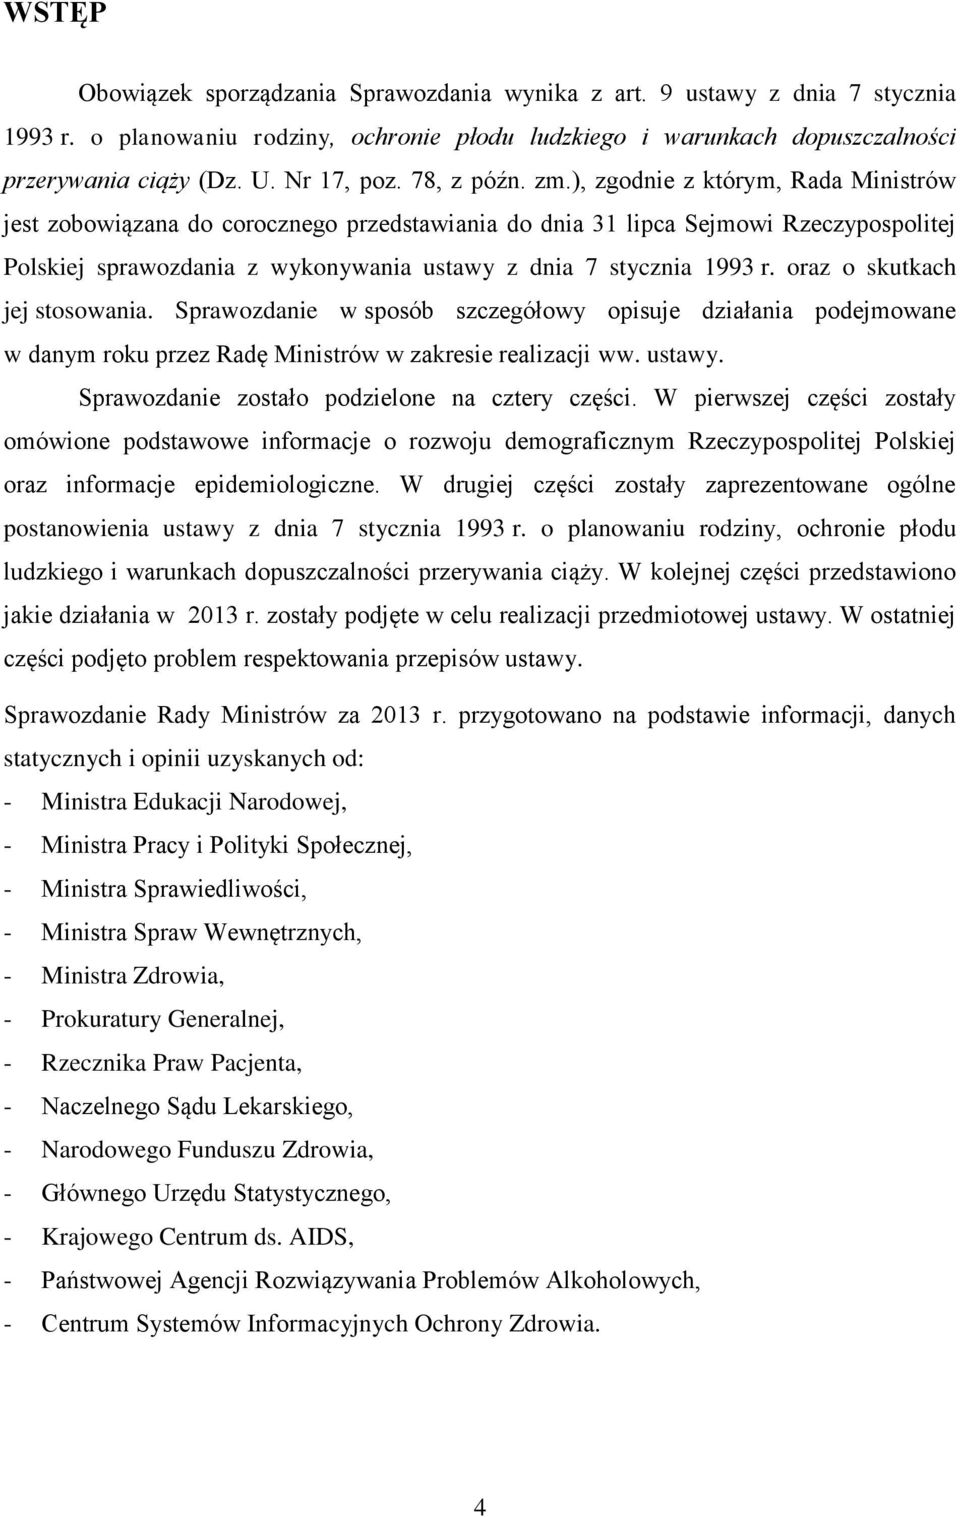 ), zgodnie z którym, Rada Ministrów jest zobowiązana do corocznego przedstawiania do dnia 31 lipca Sejmowi Rzeczypospolitej Polskiej sprawozdania z wykonywania ustawy z dnia 7 stycznia 1993 r.